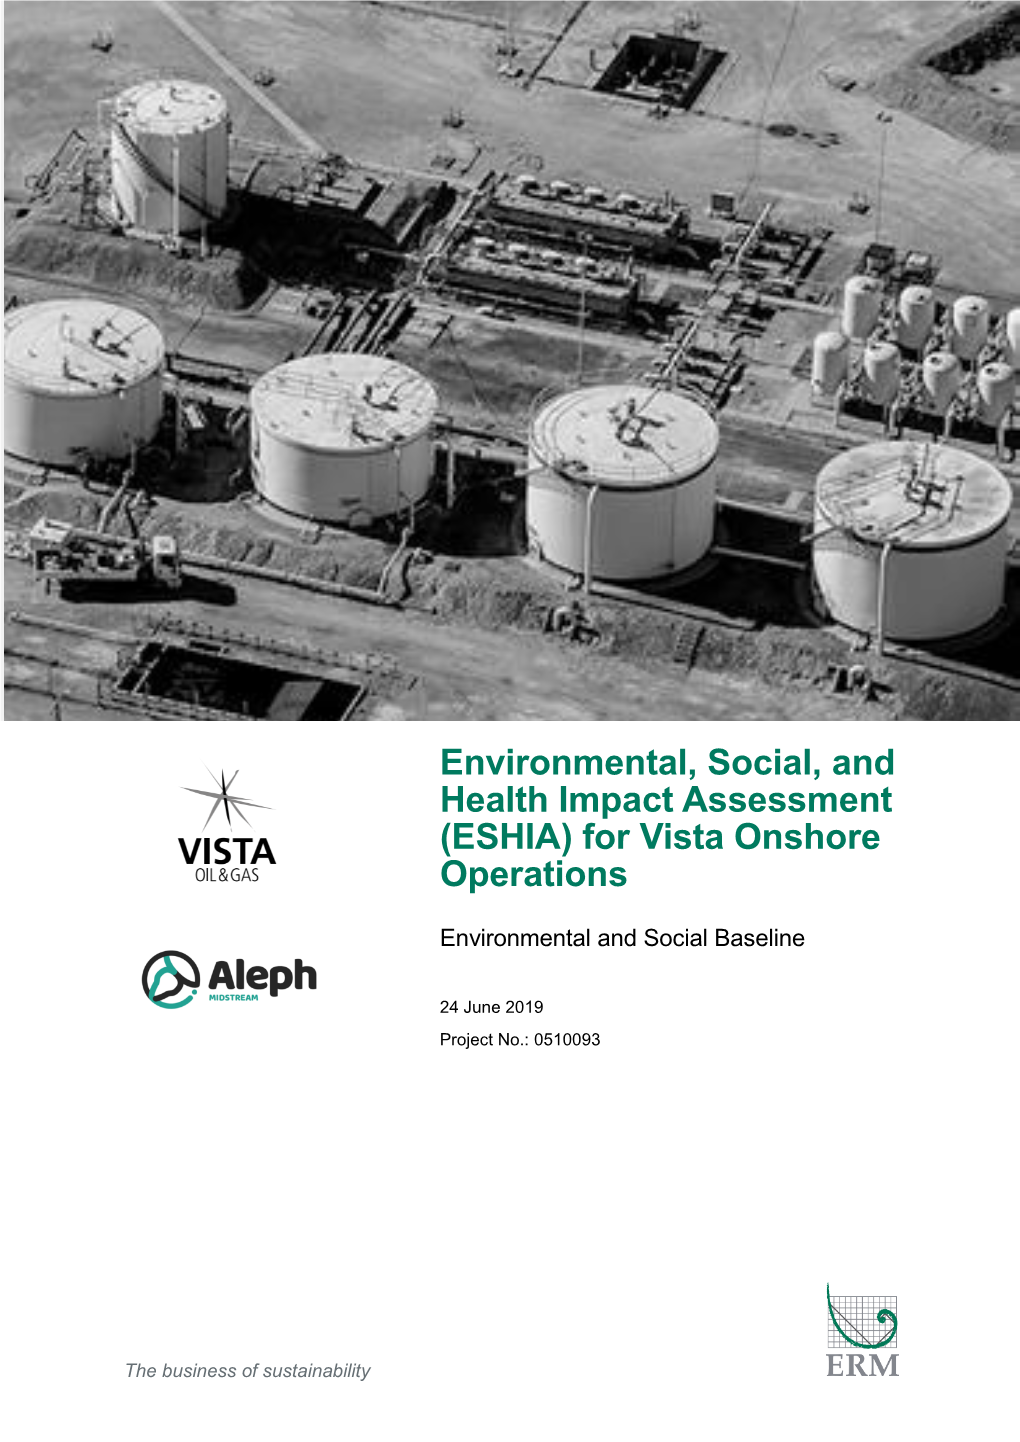 Environmental & Social Baseline